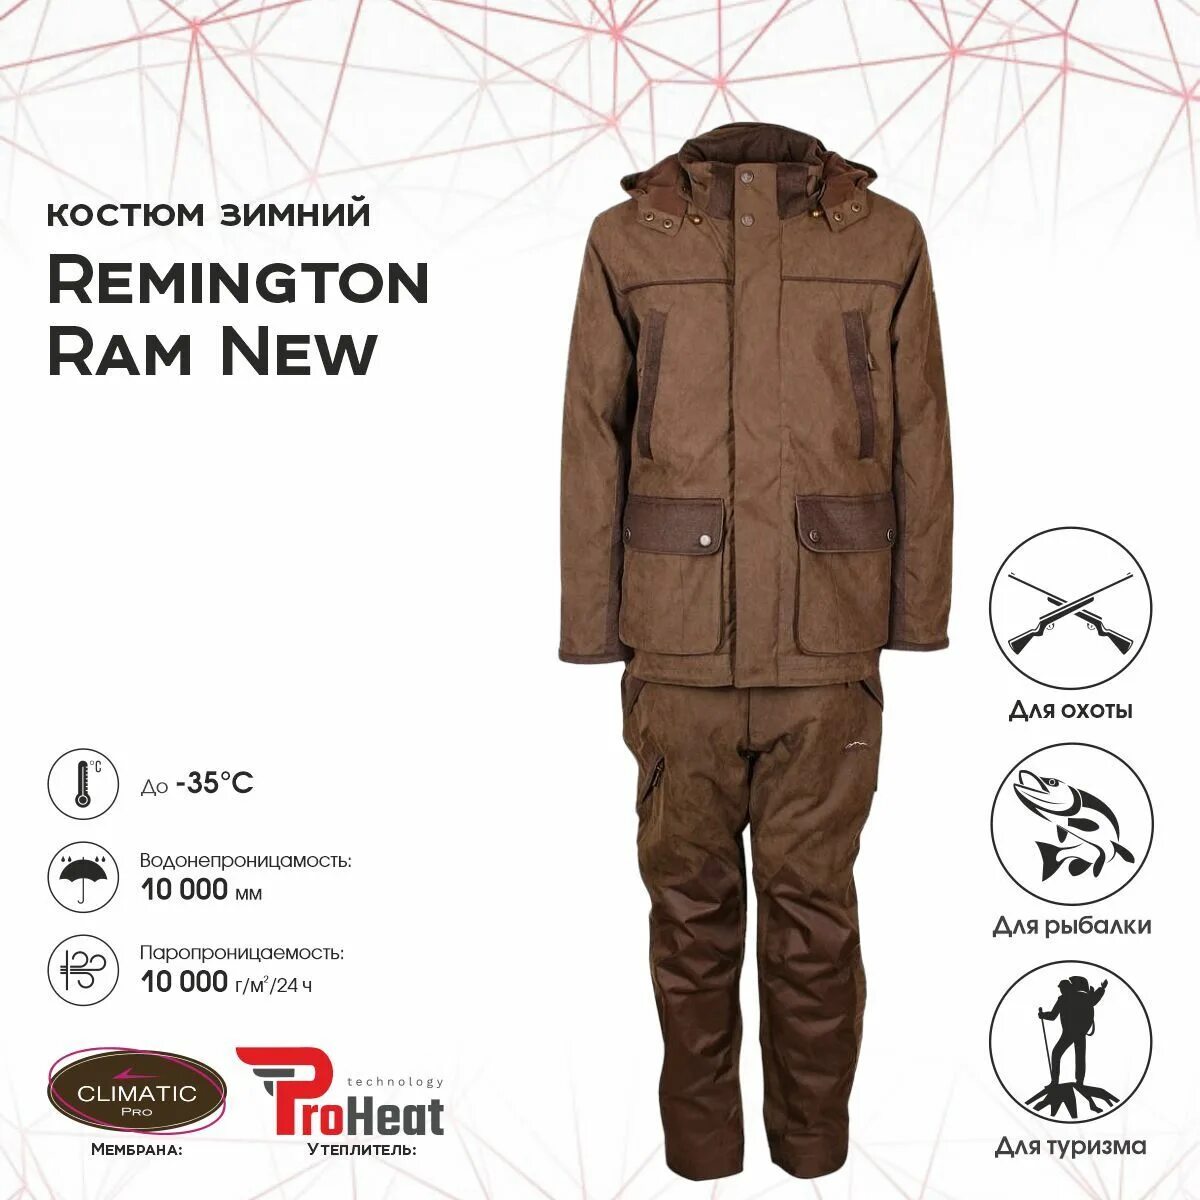 Remington brown. Костюм Remington Ram New р. XL. Ремингтон рам Нью костюм. Remington Ram New. Рыболовный костюм Remington.